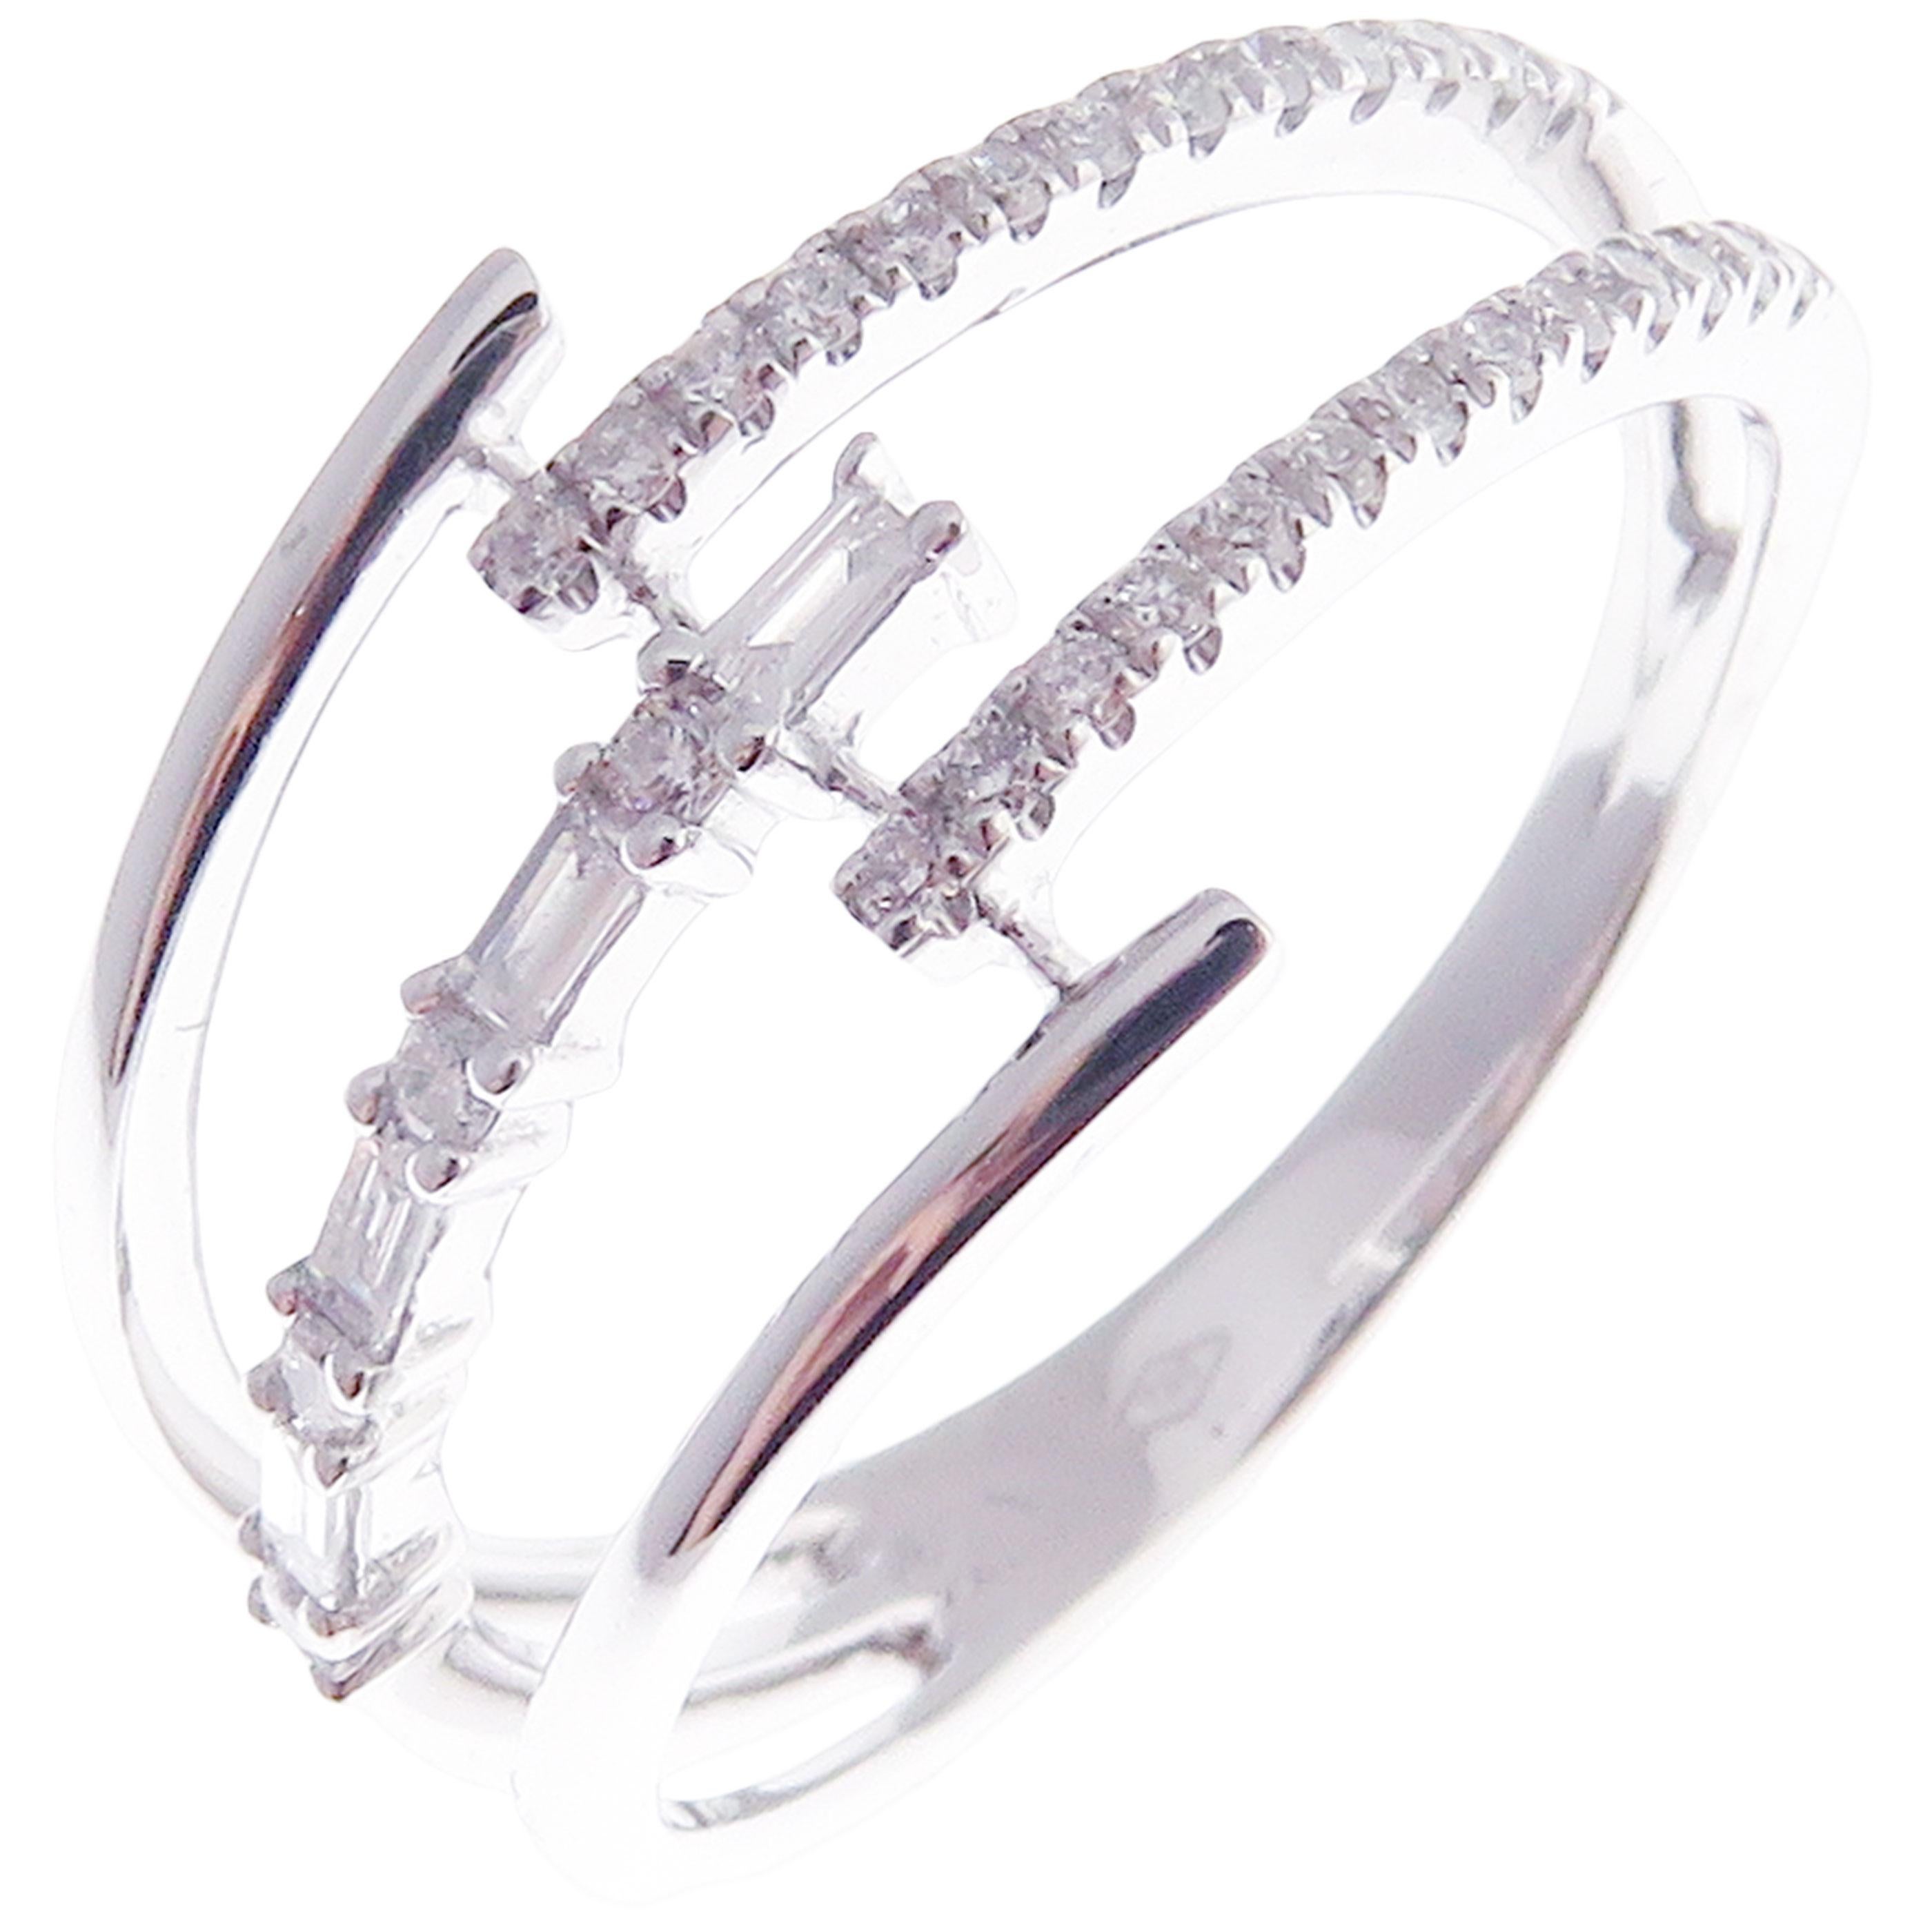 Dieser trendige mehrschichtige Ring ist aus 18 Karat Weißgold gefertigt und mit 30 runden weißen Diamanten von insgesamt 0,18 Karat und 2 weißen Baguette-Diamanten von insgesamt 0,06 Karat besetzt.
Ungefähres Gesamtgewicht 2,92 Gramm.
Standard